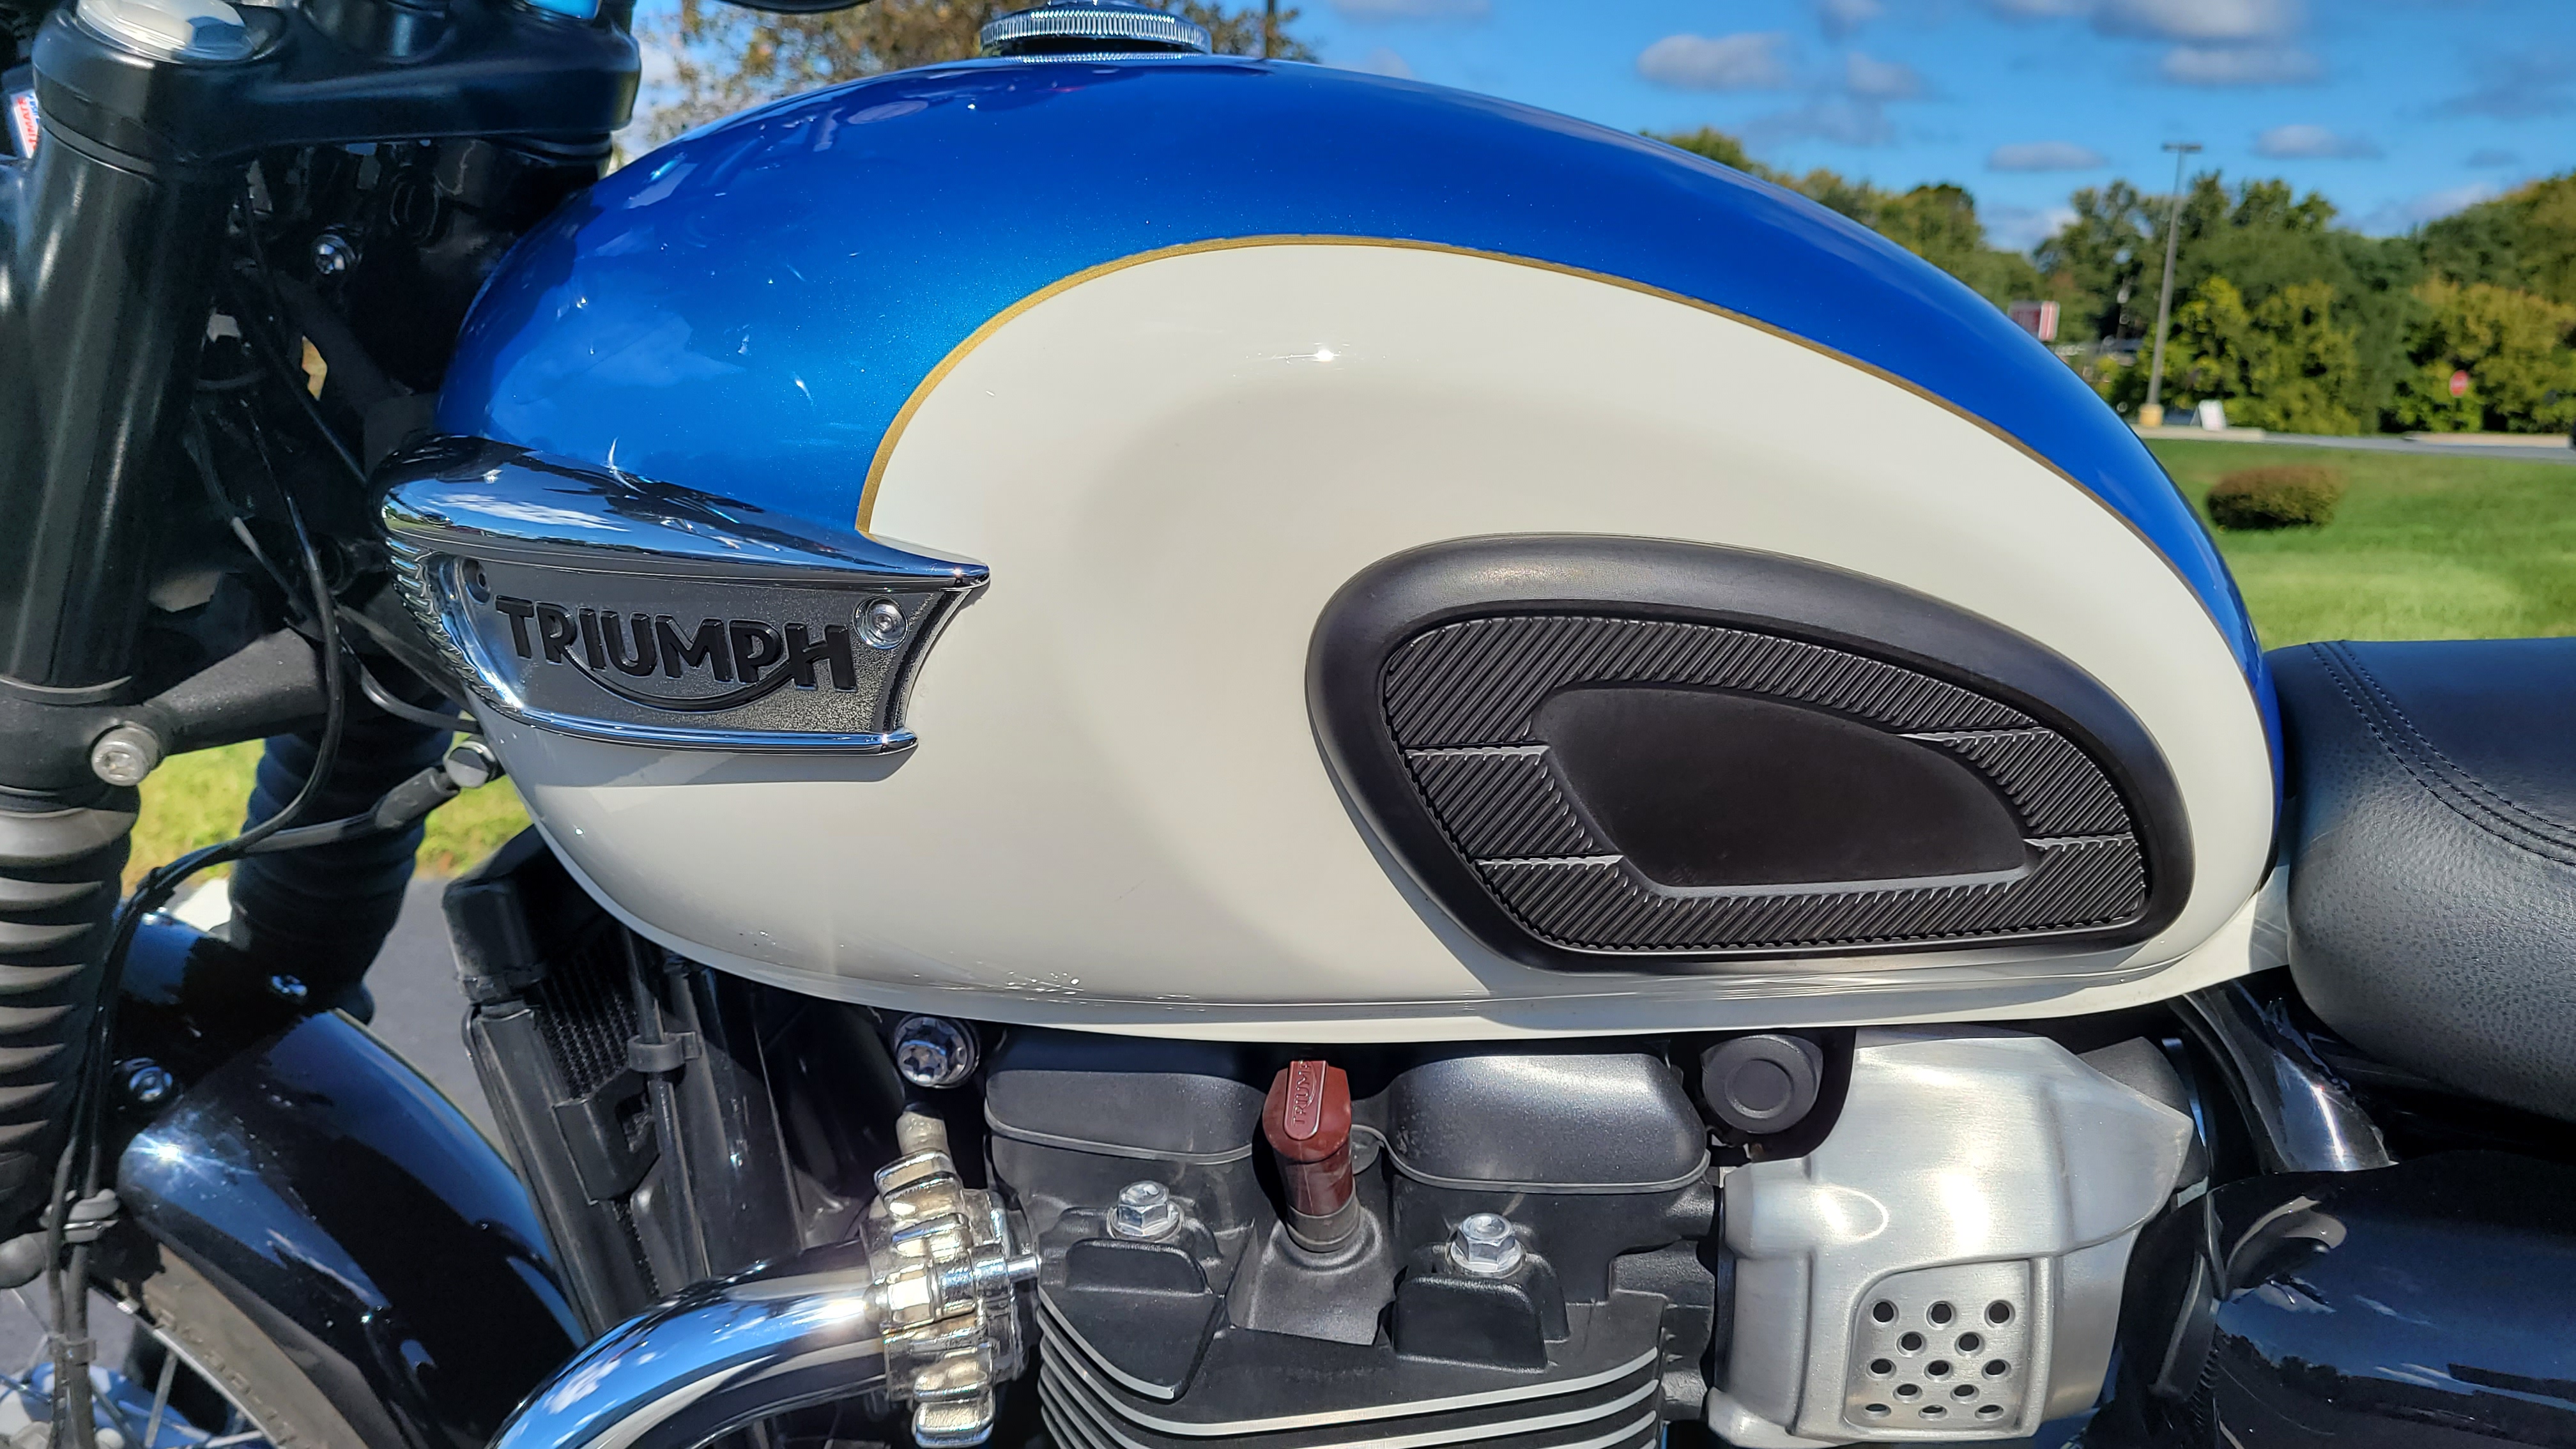 2019 Triumph Bonneville T100 Base at Yamaha Triumph KTM of Camp Hill, Camp Hill, PA 17011